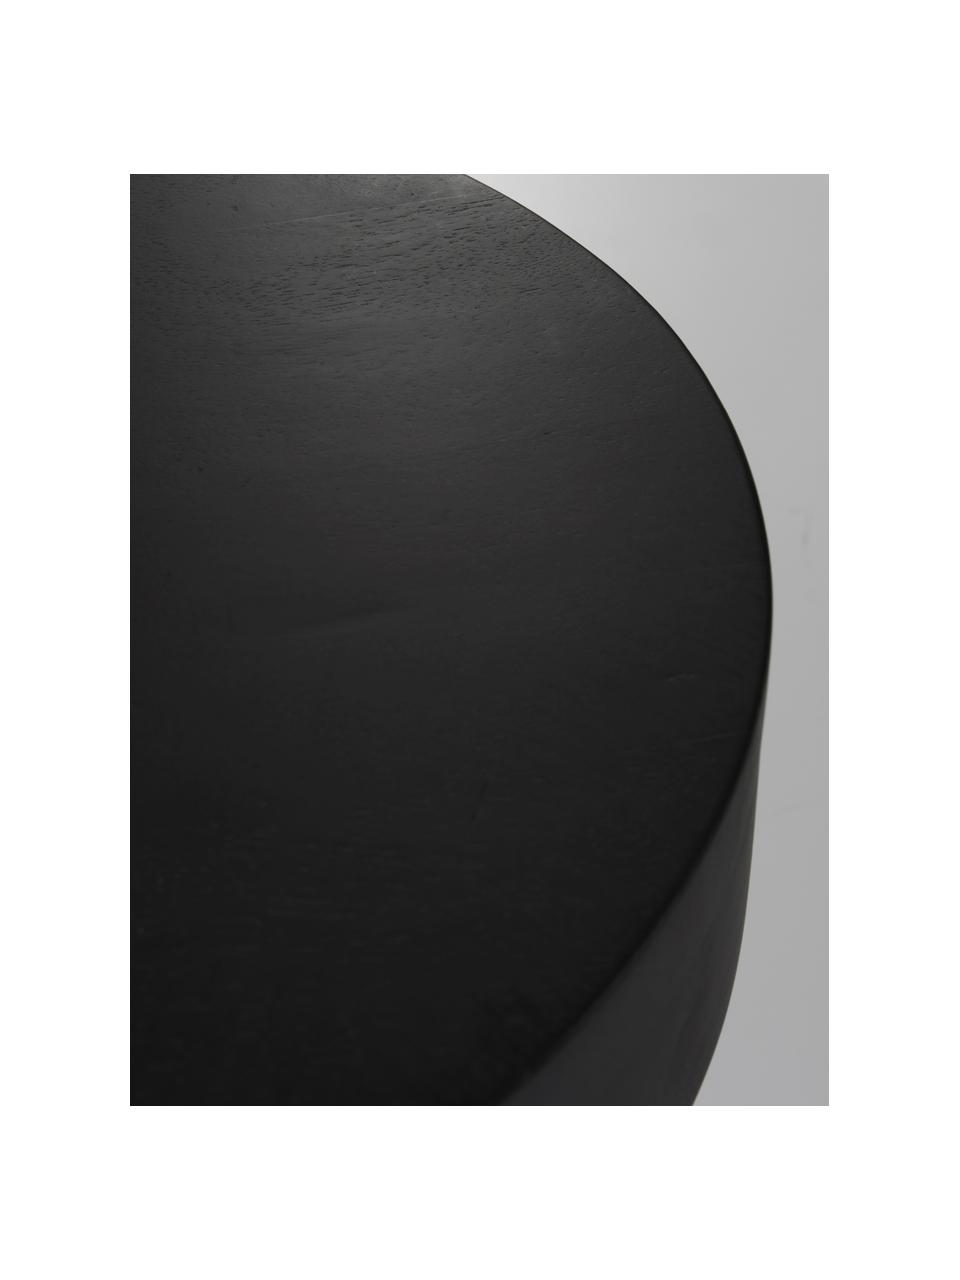 Runder Mangoholz-Beistelltisch Baratti in Schwarz, Massives Mangoholz, Mangoholz, schwarz lackiert, Ø 35 x H 35 cm